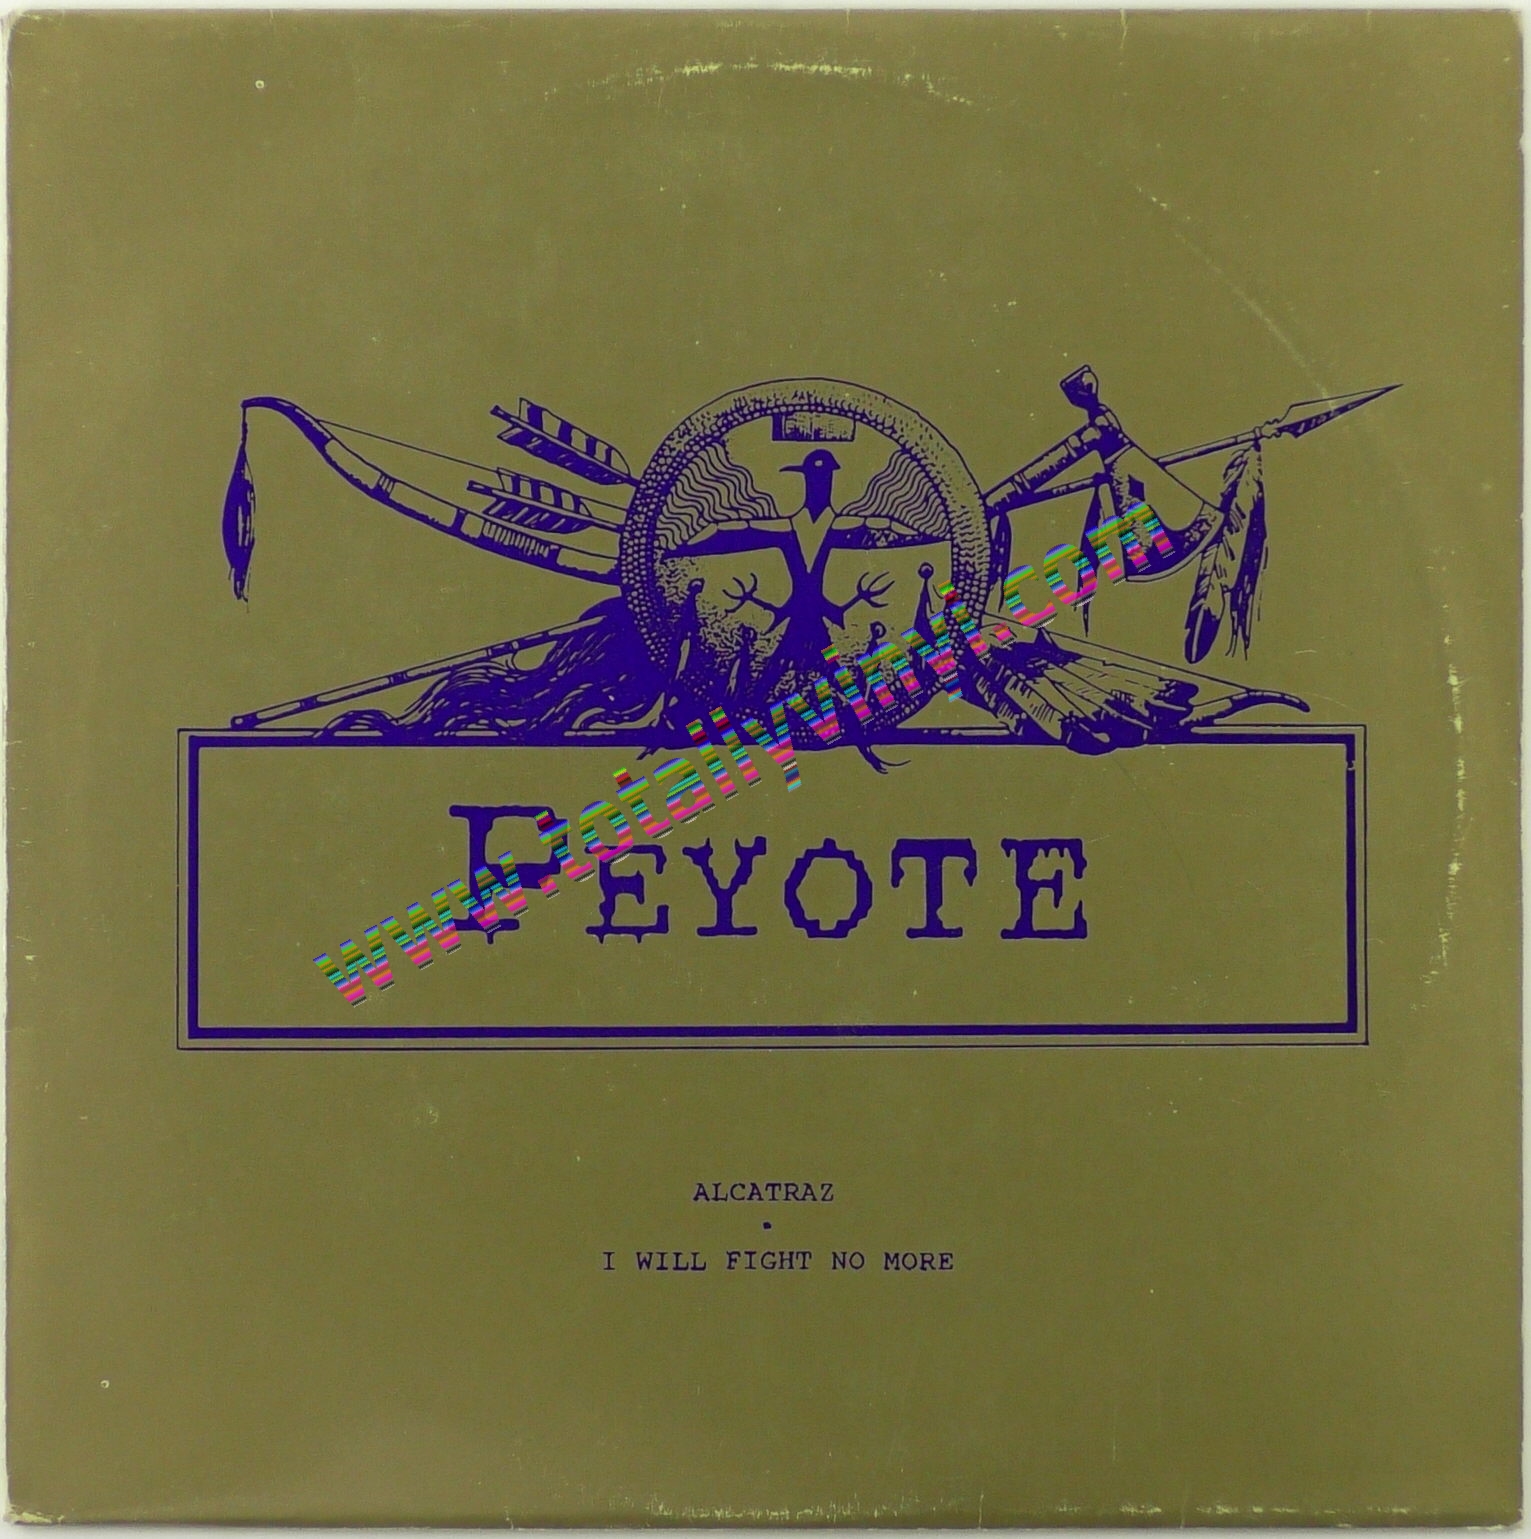 Totally Vinyl Records Peyote Alcatraz /I will fight no more 12 inch Nlist Picture Cover